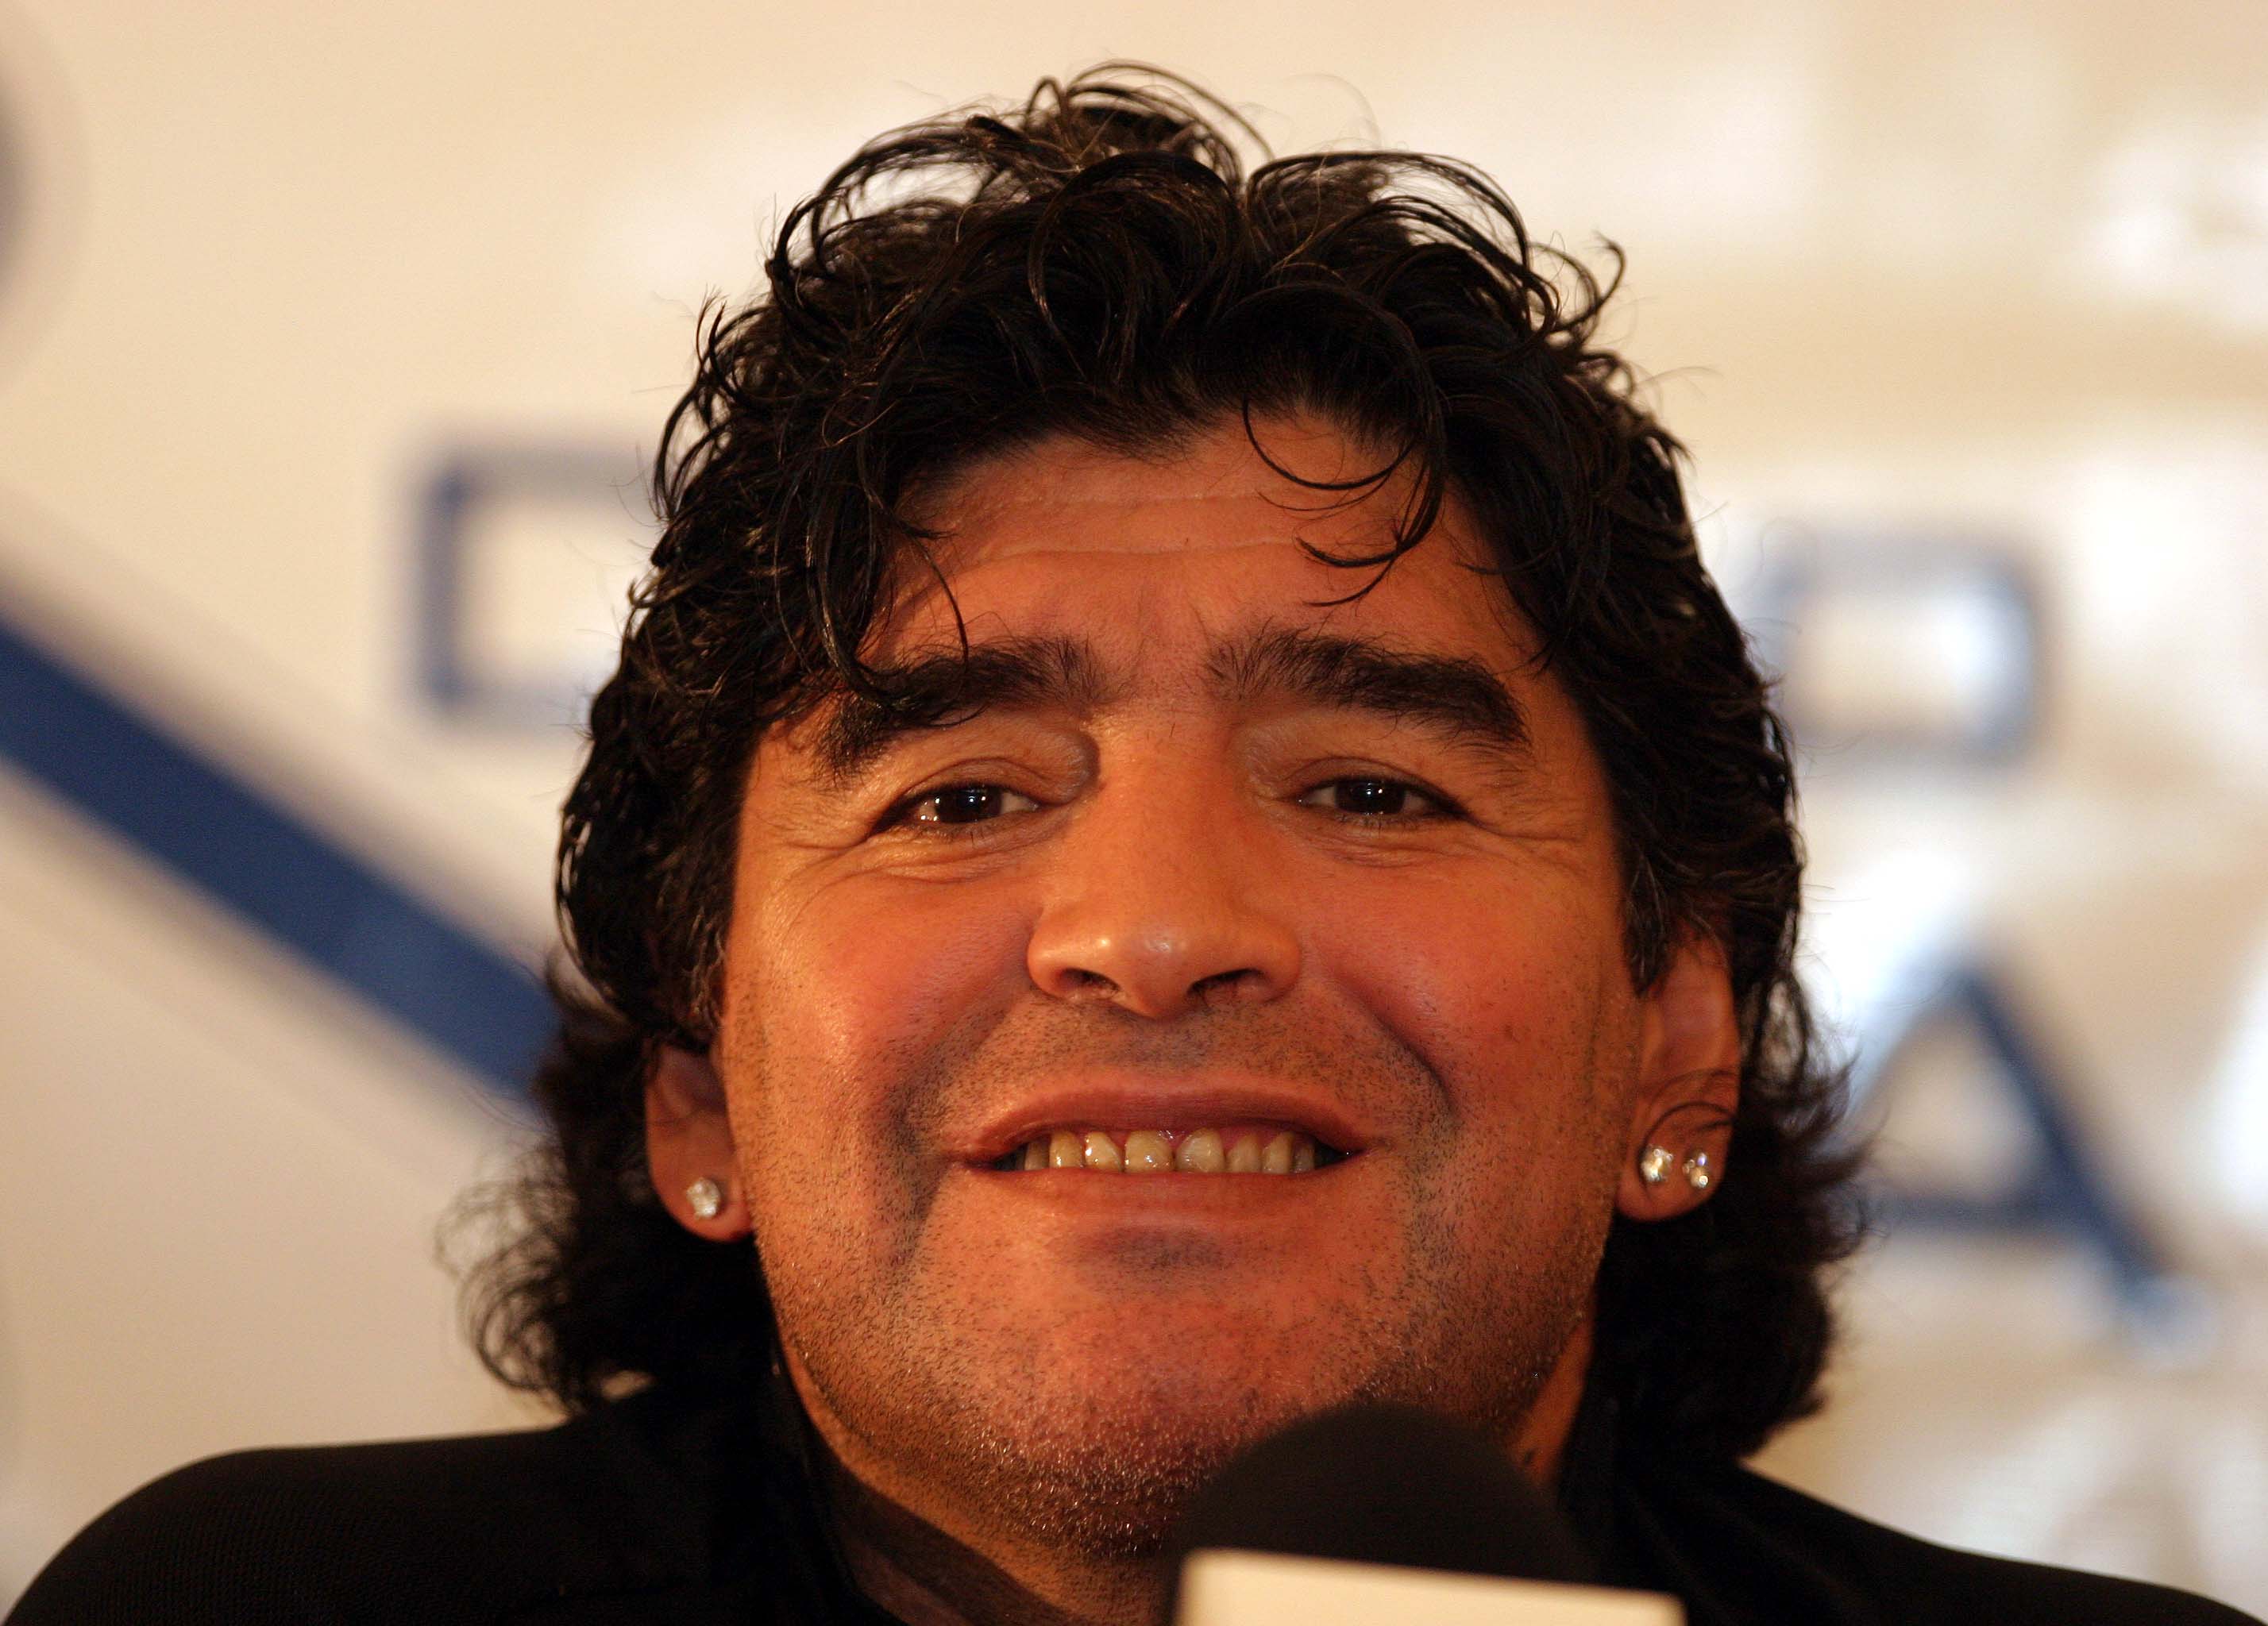 La vida de Maradona fue documentada en varias producciones. (Foto Prensa Libre: Hemeroteca)